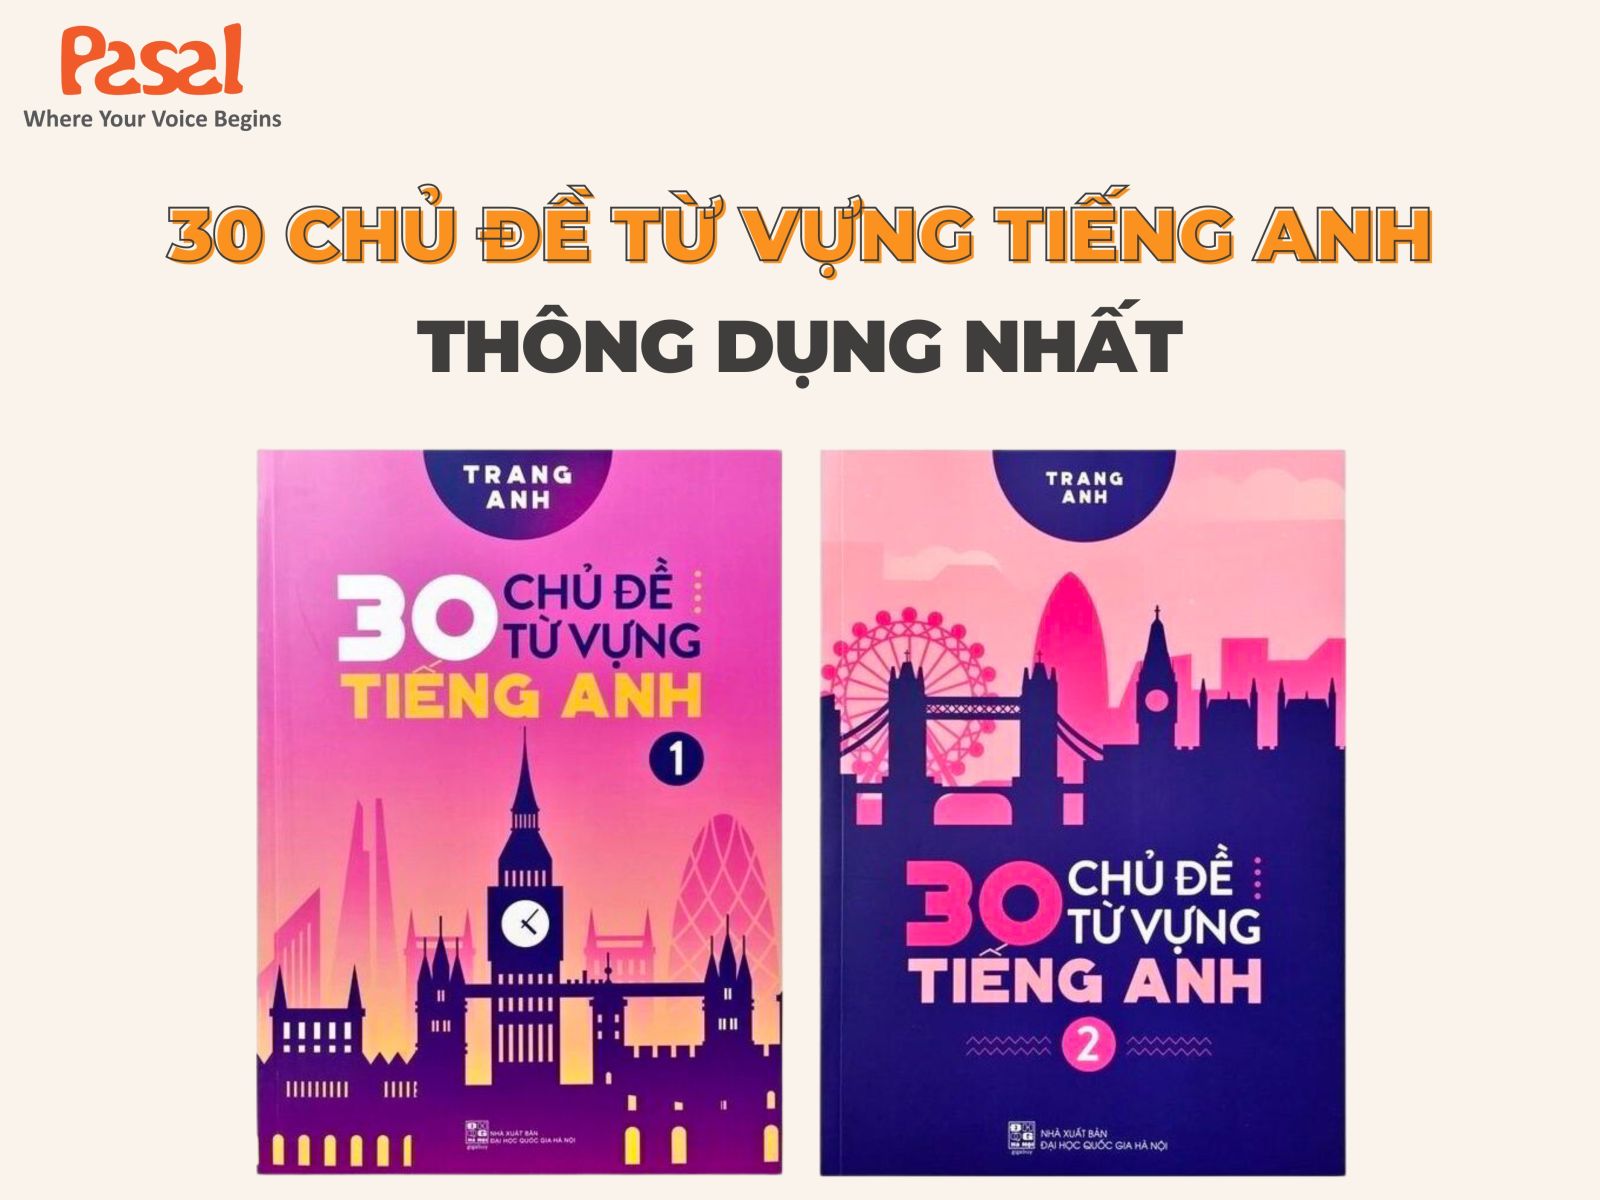 30 chủ đề từ vựng tiếng Anh - Cô Trang Anh